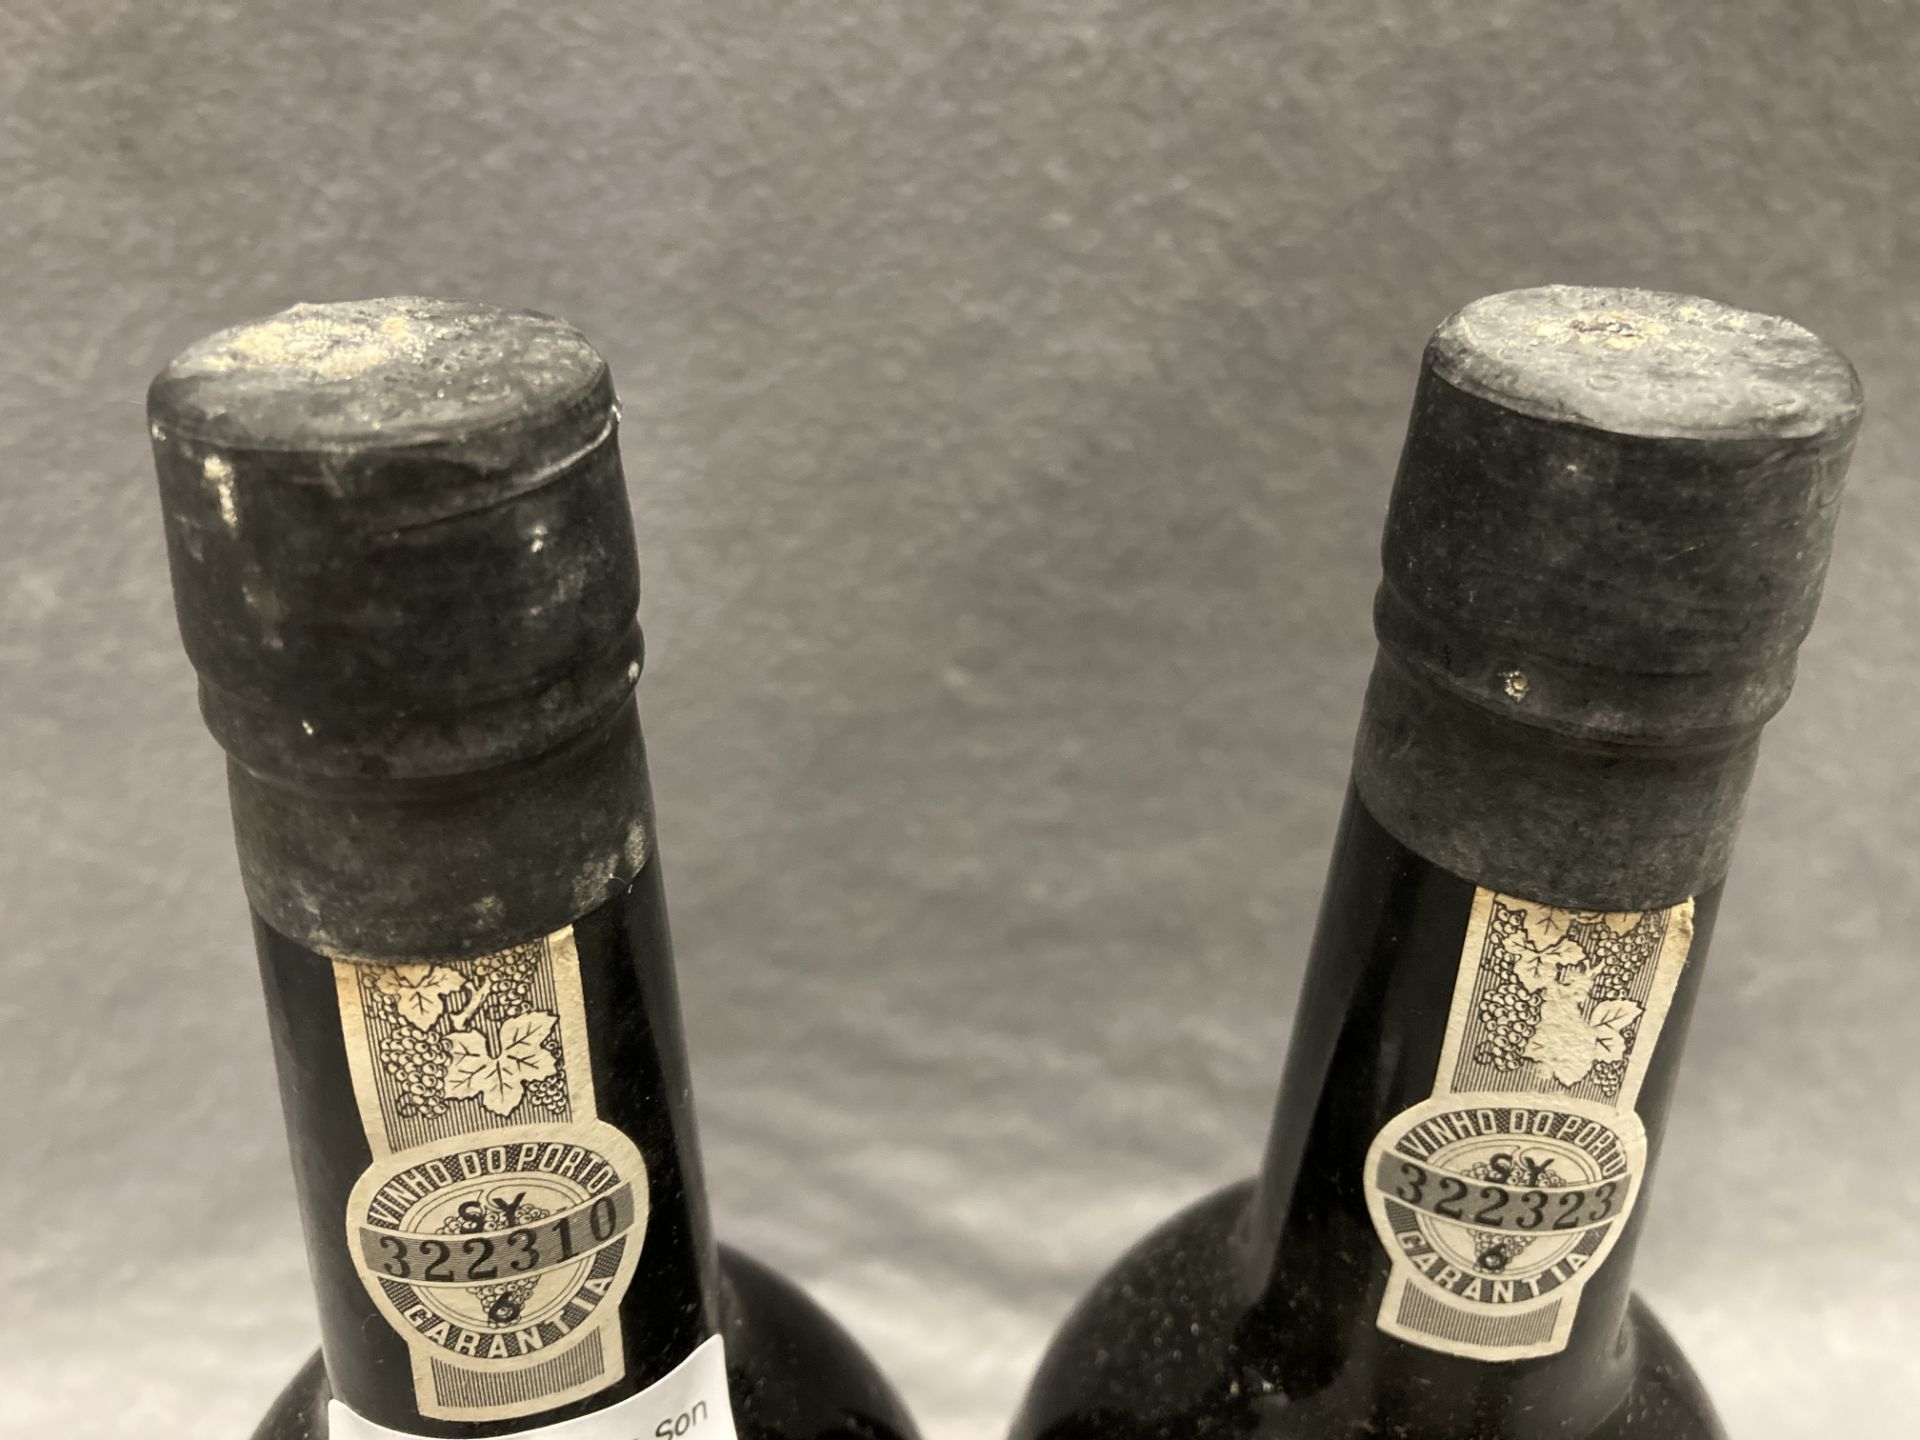 Two 75cl bottles of Warre's 1975 Vintage Port - Image 2 of 2